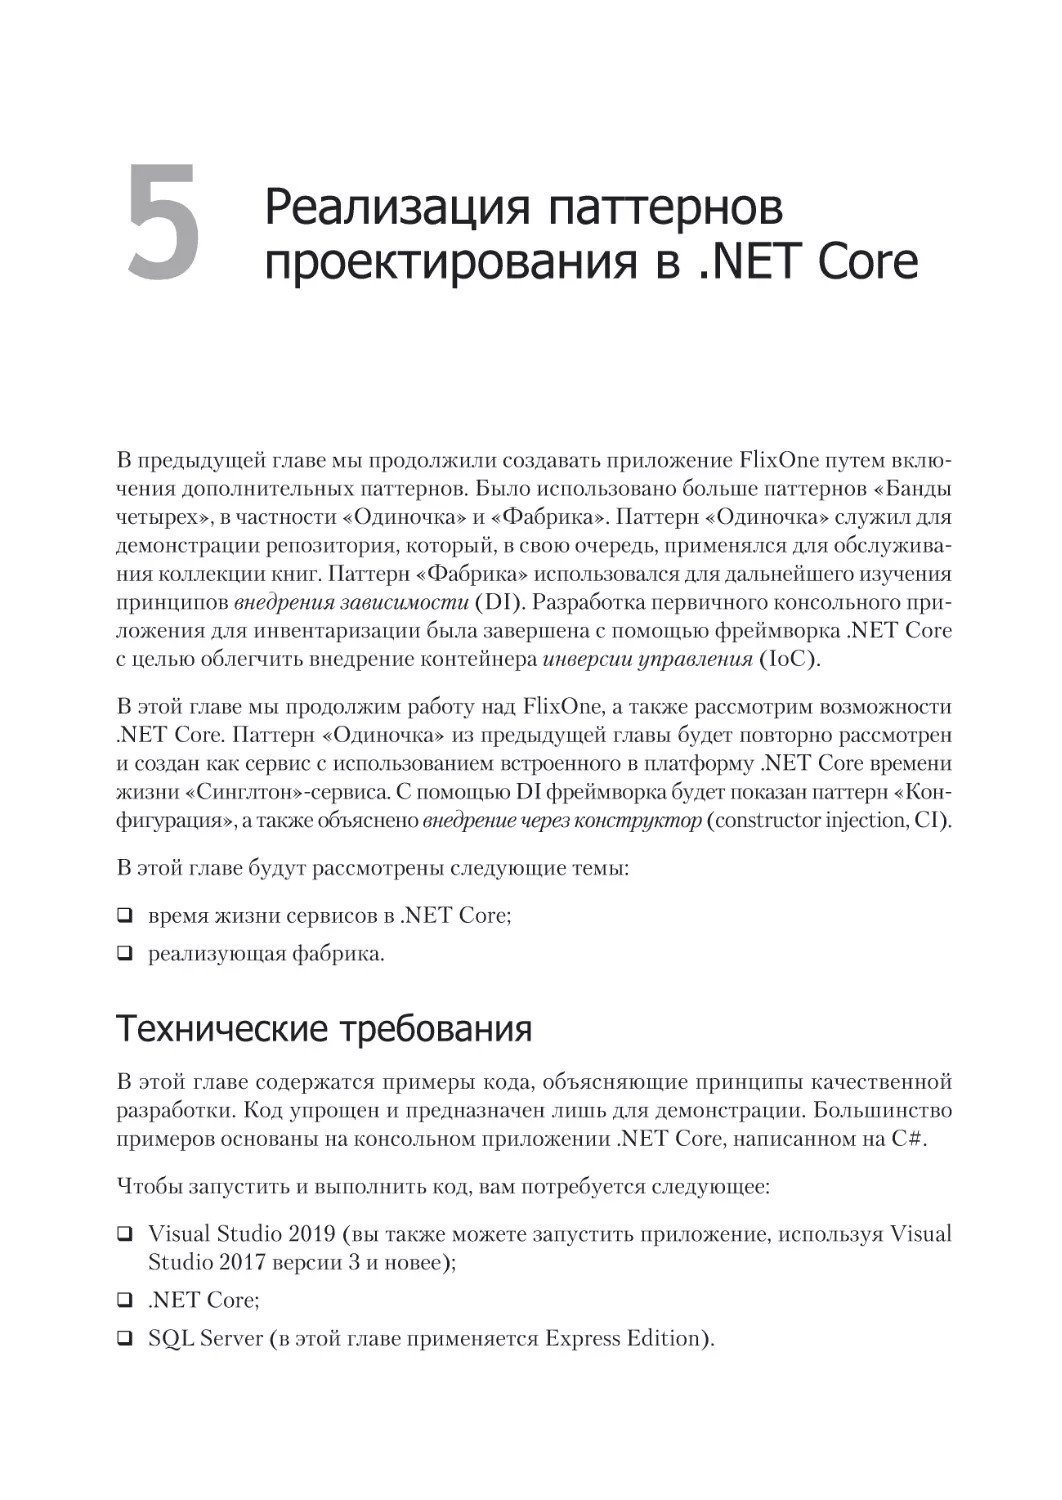 Глава 5. Реализация паттернов проектирования в .Net Core
Технические требования